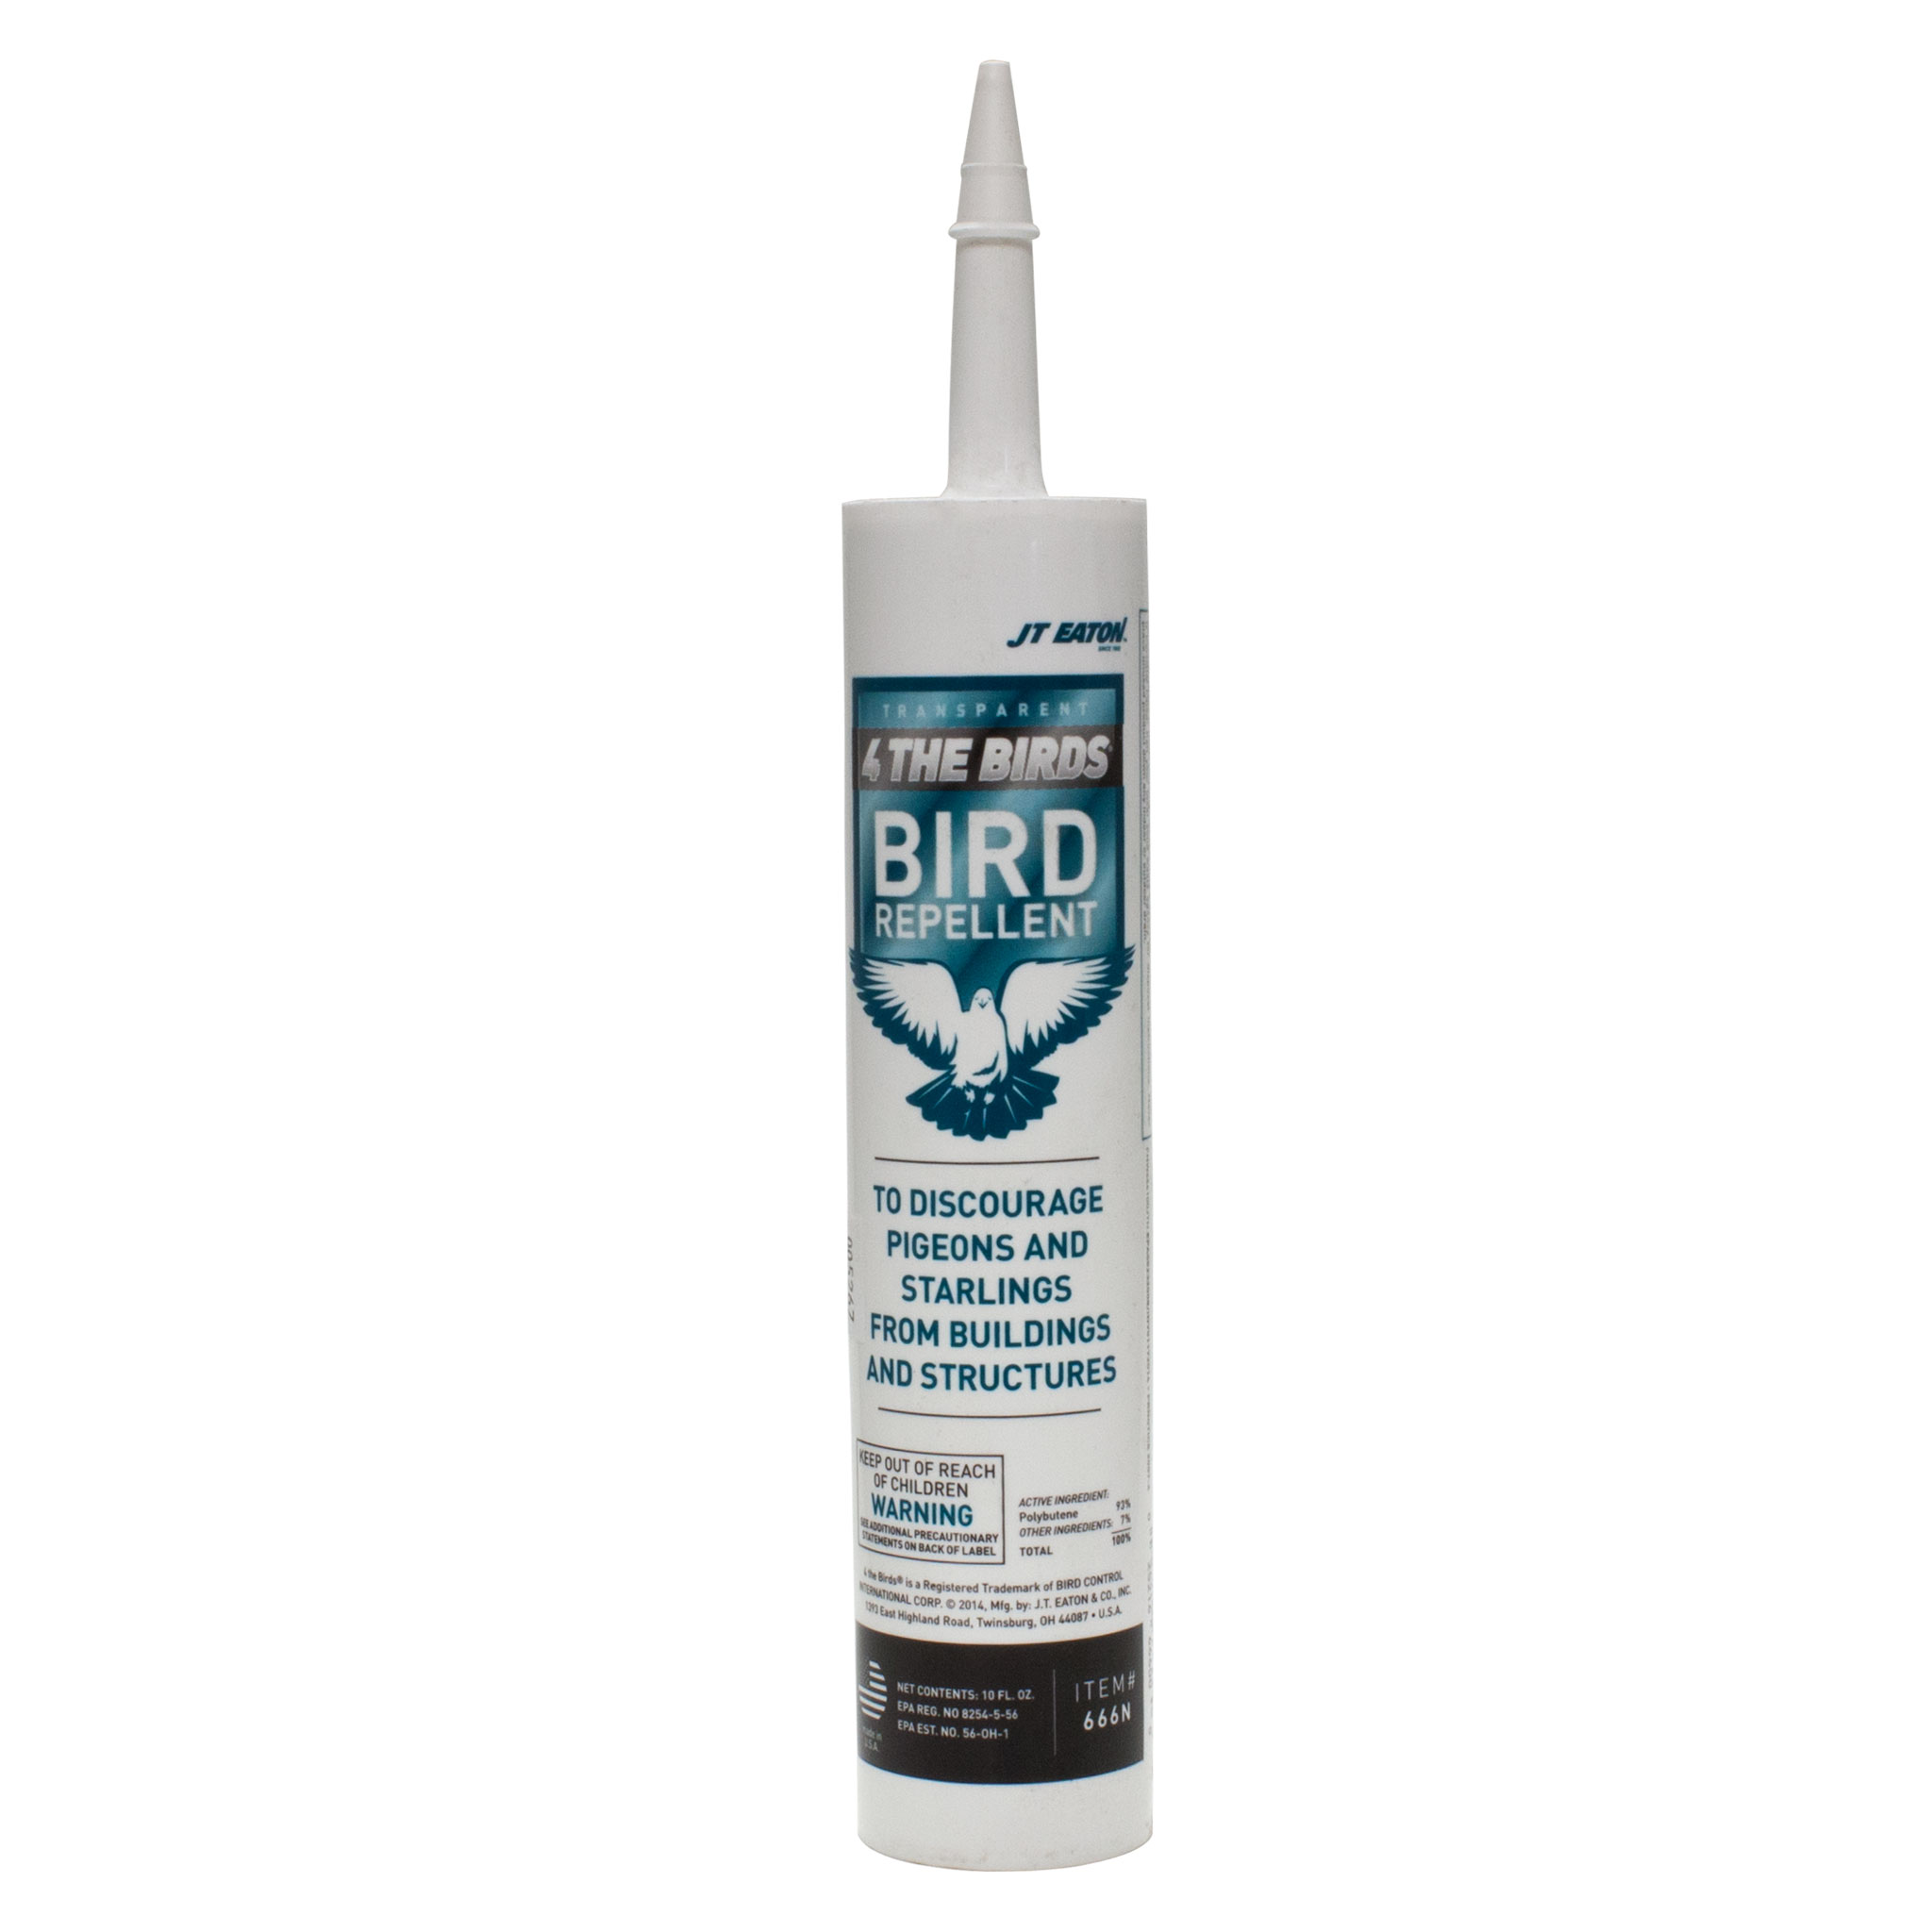 4 The Birds - Bird Repellent 